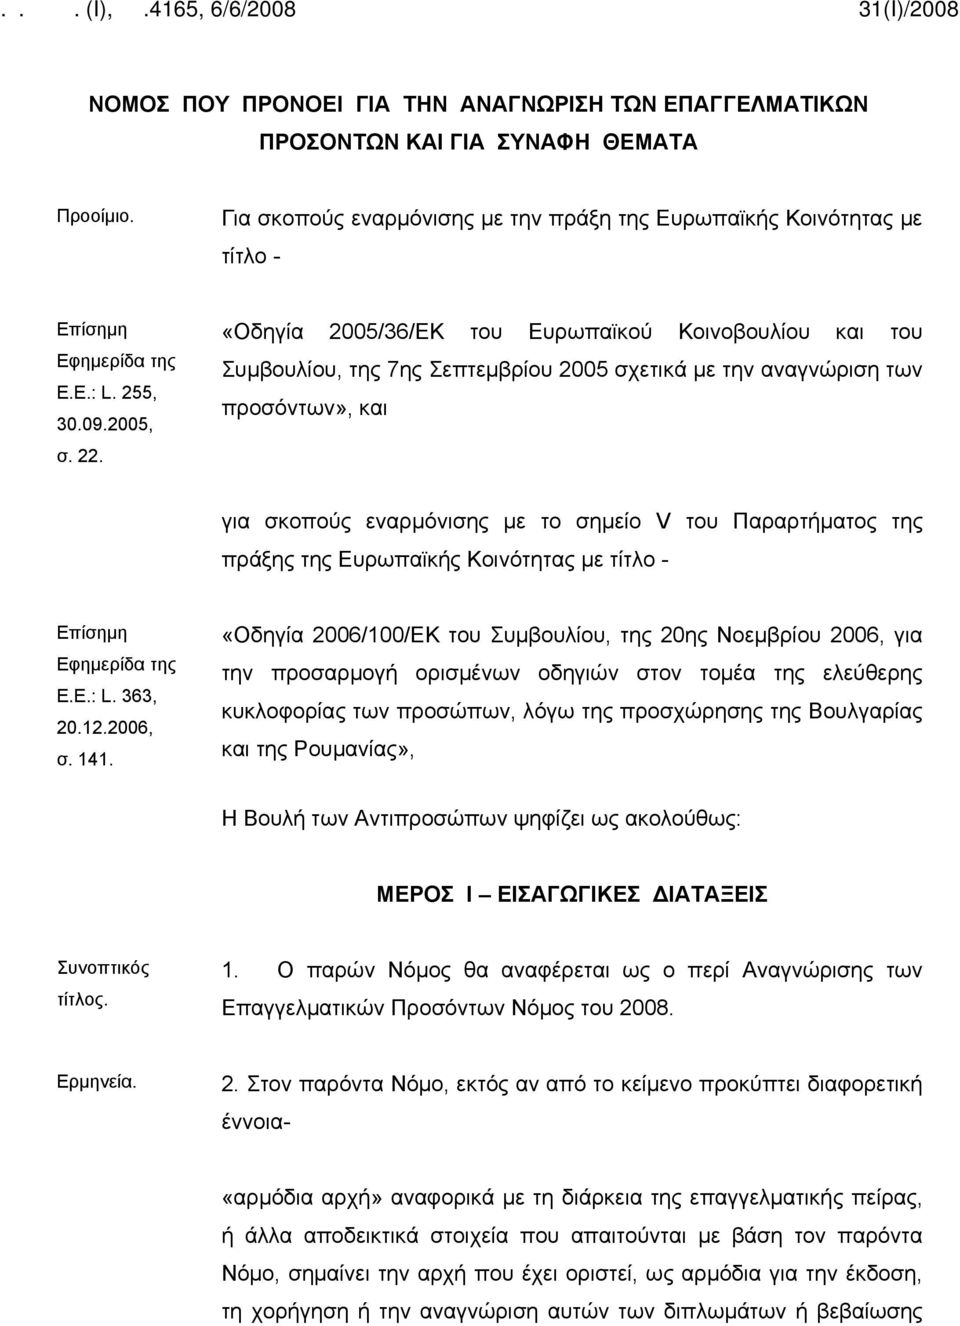 «Οδηγία 2005/36/ΕΚ του Ευρωπαϊκού Κοινοβουλίου και του Συμβουλίου, της 7ης Σεπτεμβρίου 2005 σχετικά με την αναγνώριση των προσόντων», και για σκοπούς εναρμόνισης με το σημείο V του Παραρτήματος της